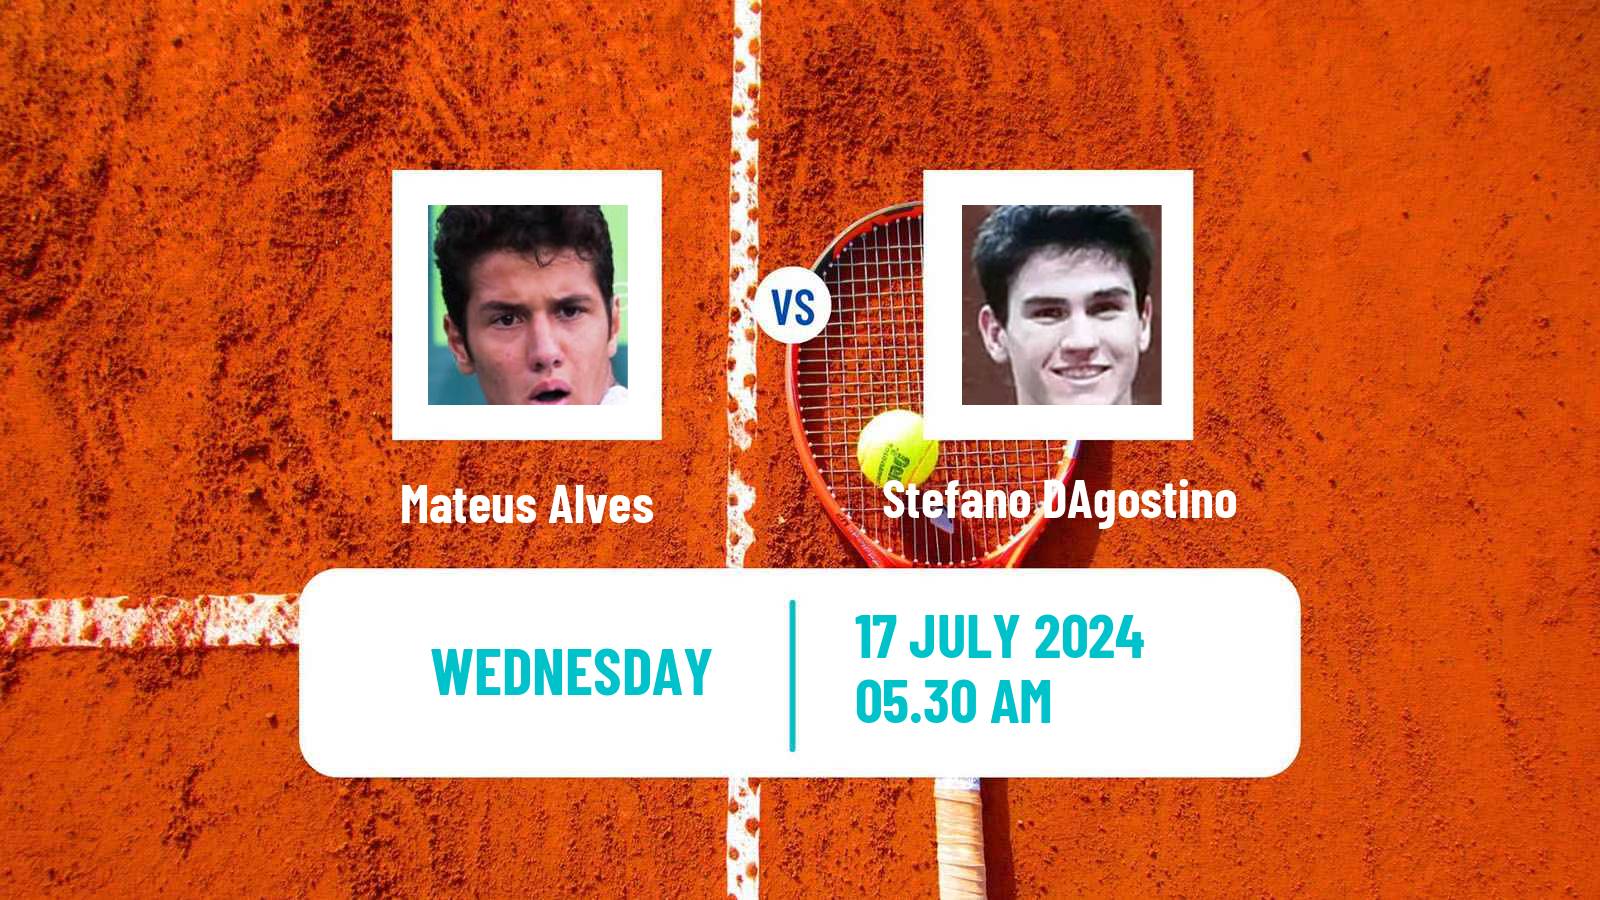 Tennis ITF M25 Telfs Men Mateus Alves - Stefano DAgostino